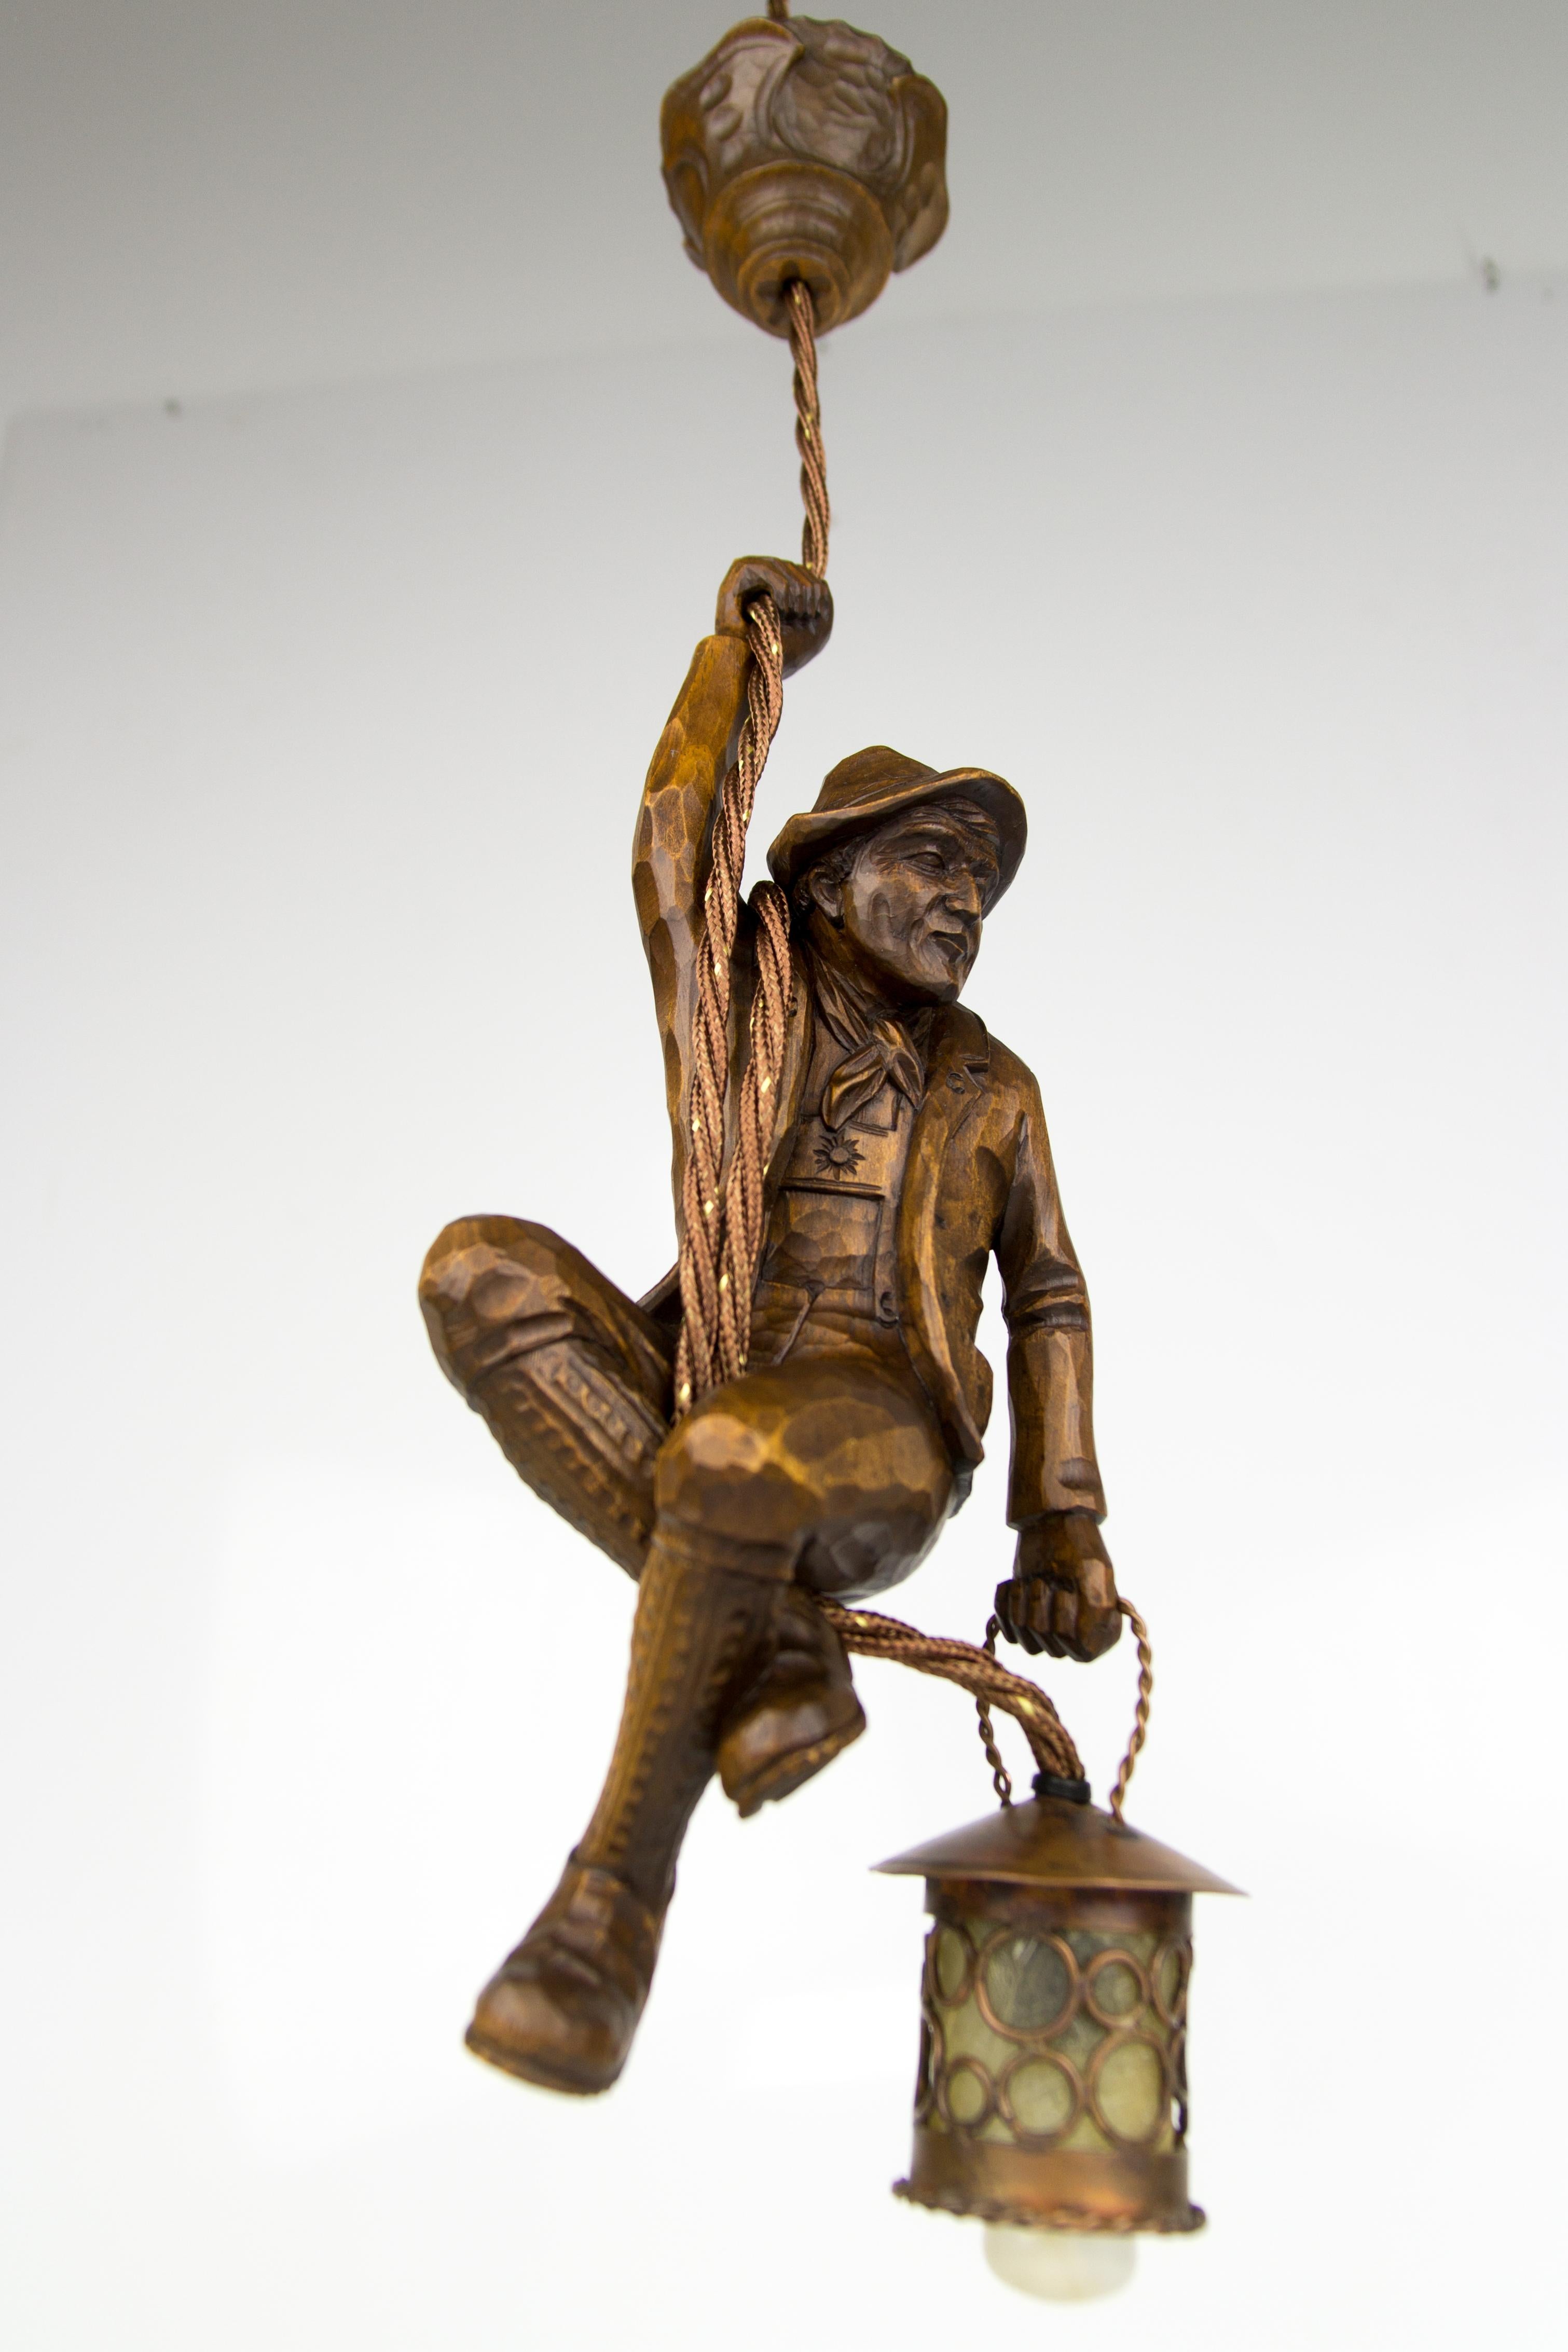 Cette magnifique lampe suspendue figurative de la Forêt Noire allemande présente une figure d'alpiniste sculptée à la main. L'alpiniste en bois sculpté se tient à une corde et tient une lanterne en cuivre dans une main.
La hauteur de la lampe